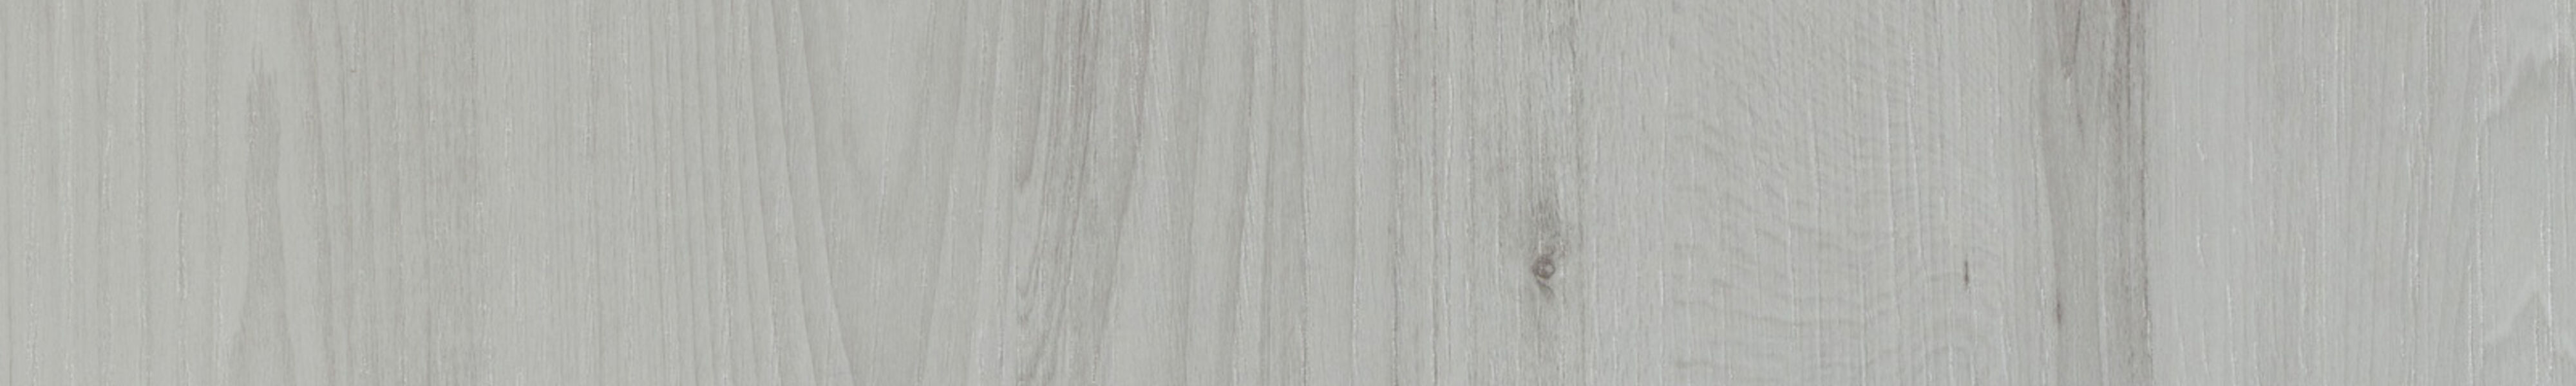 skai® structure Yukon colorado white      0,43 1420